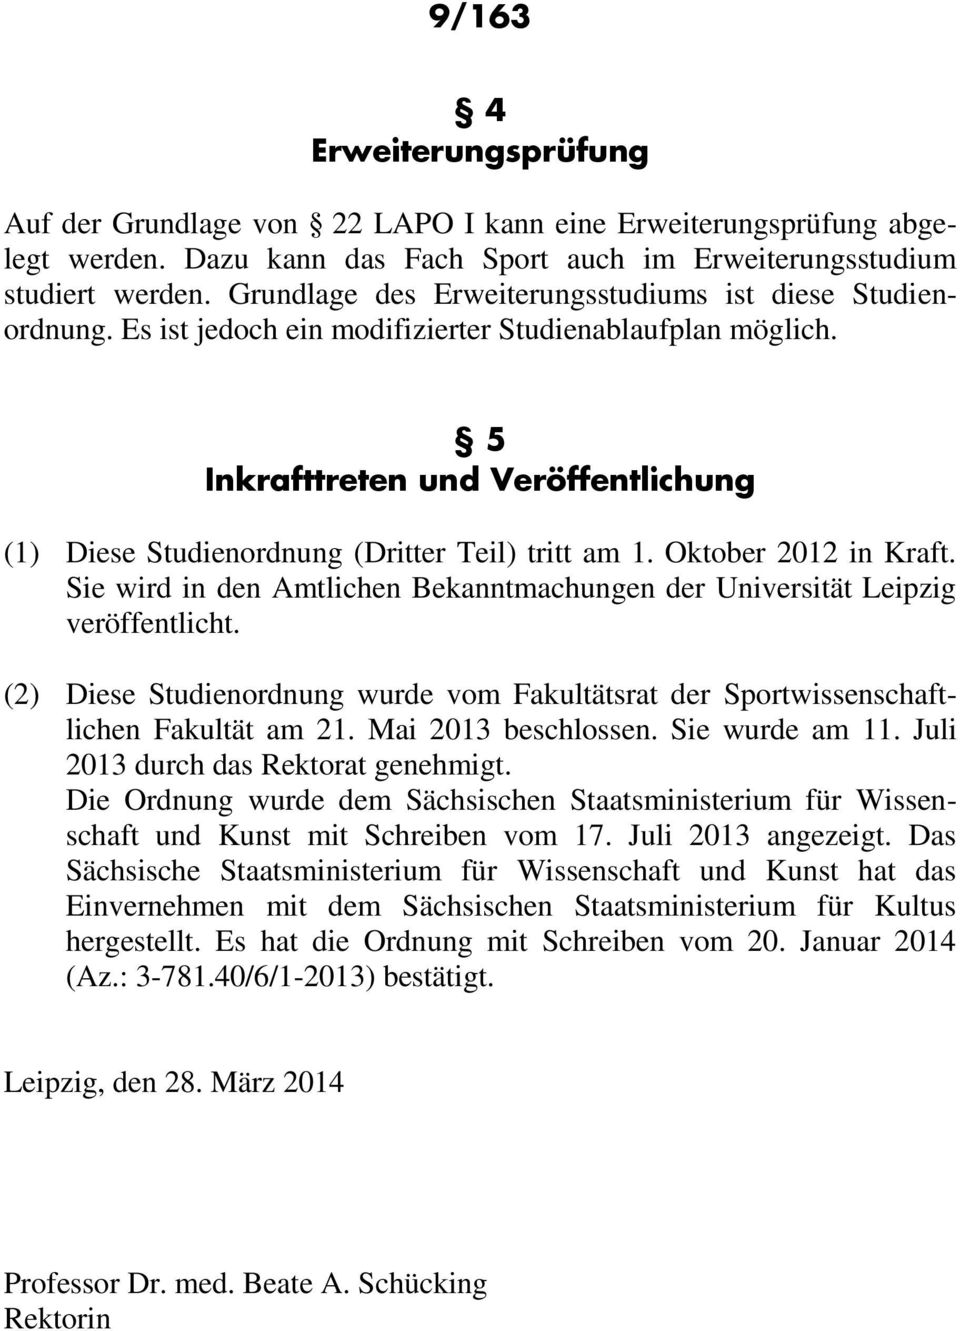 5 Inkrafttreten und Veröffentlichung (1) Diese Studienordnung (Dritter Teil) tritt am 1. Oktober 2012 in Kraft. Sie wird in den Amtlichen Bekanntmachungen der Universität Leipzig veröffentlicht.